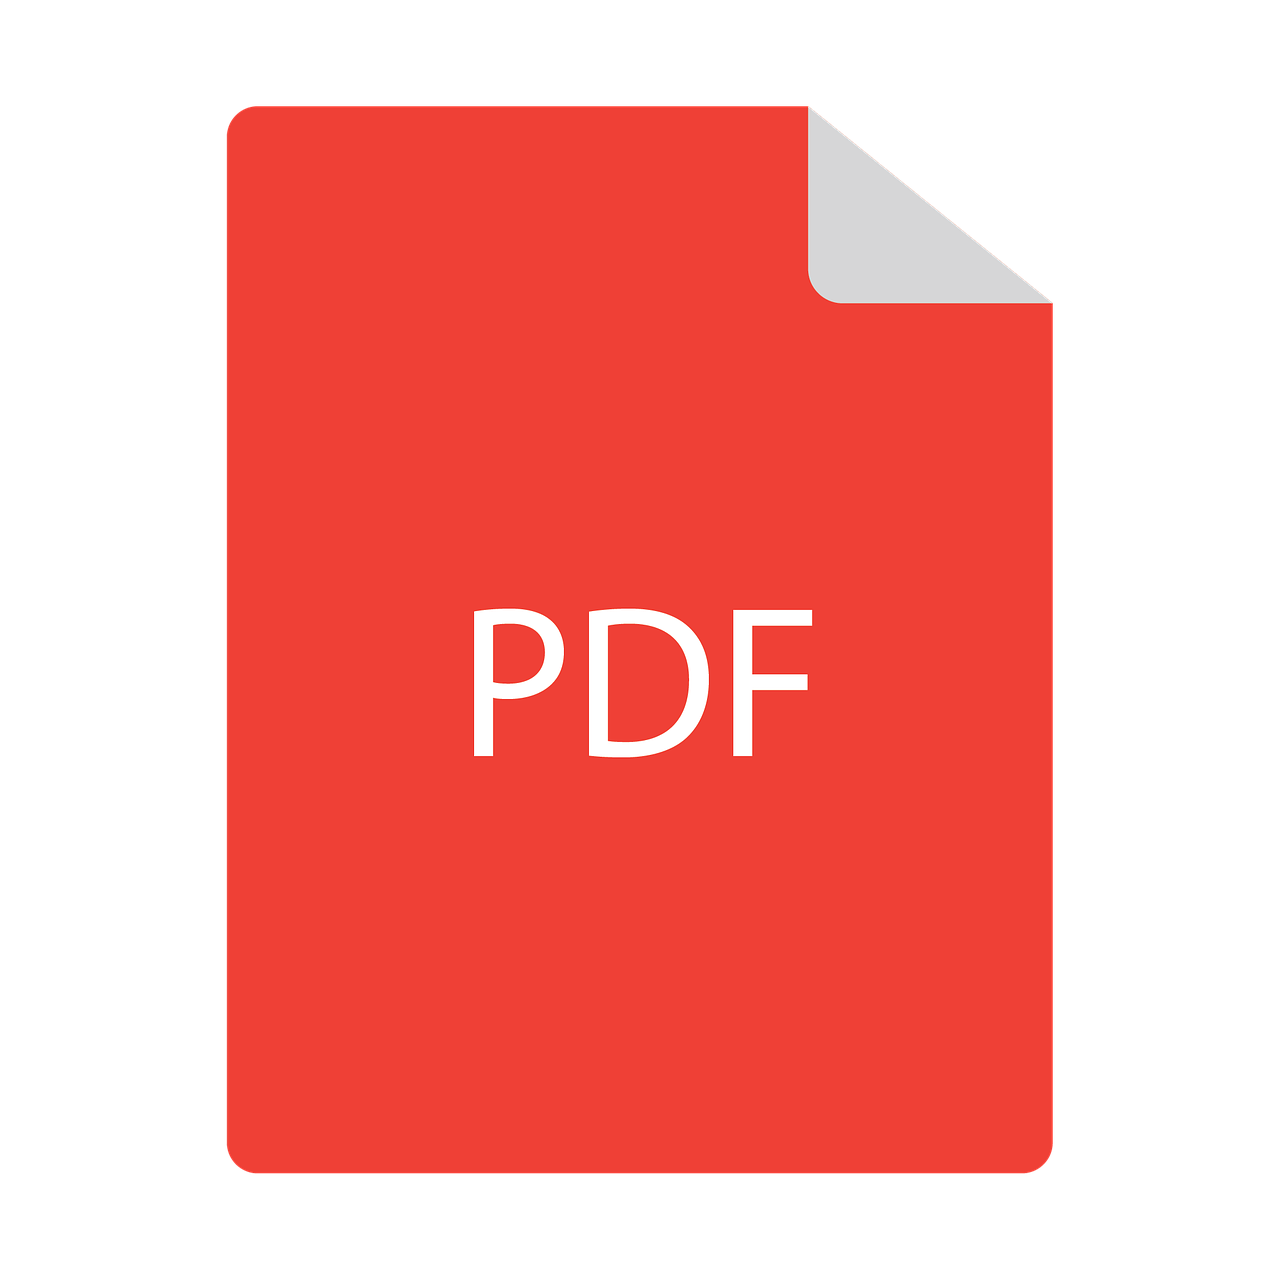 pdf miniature file free photo